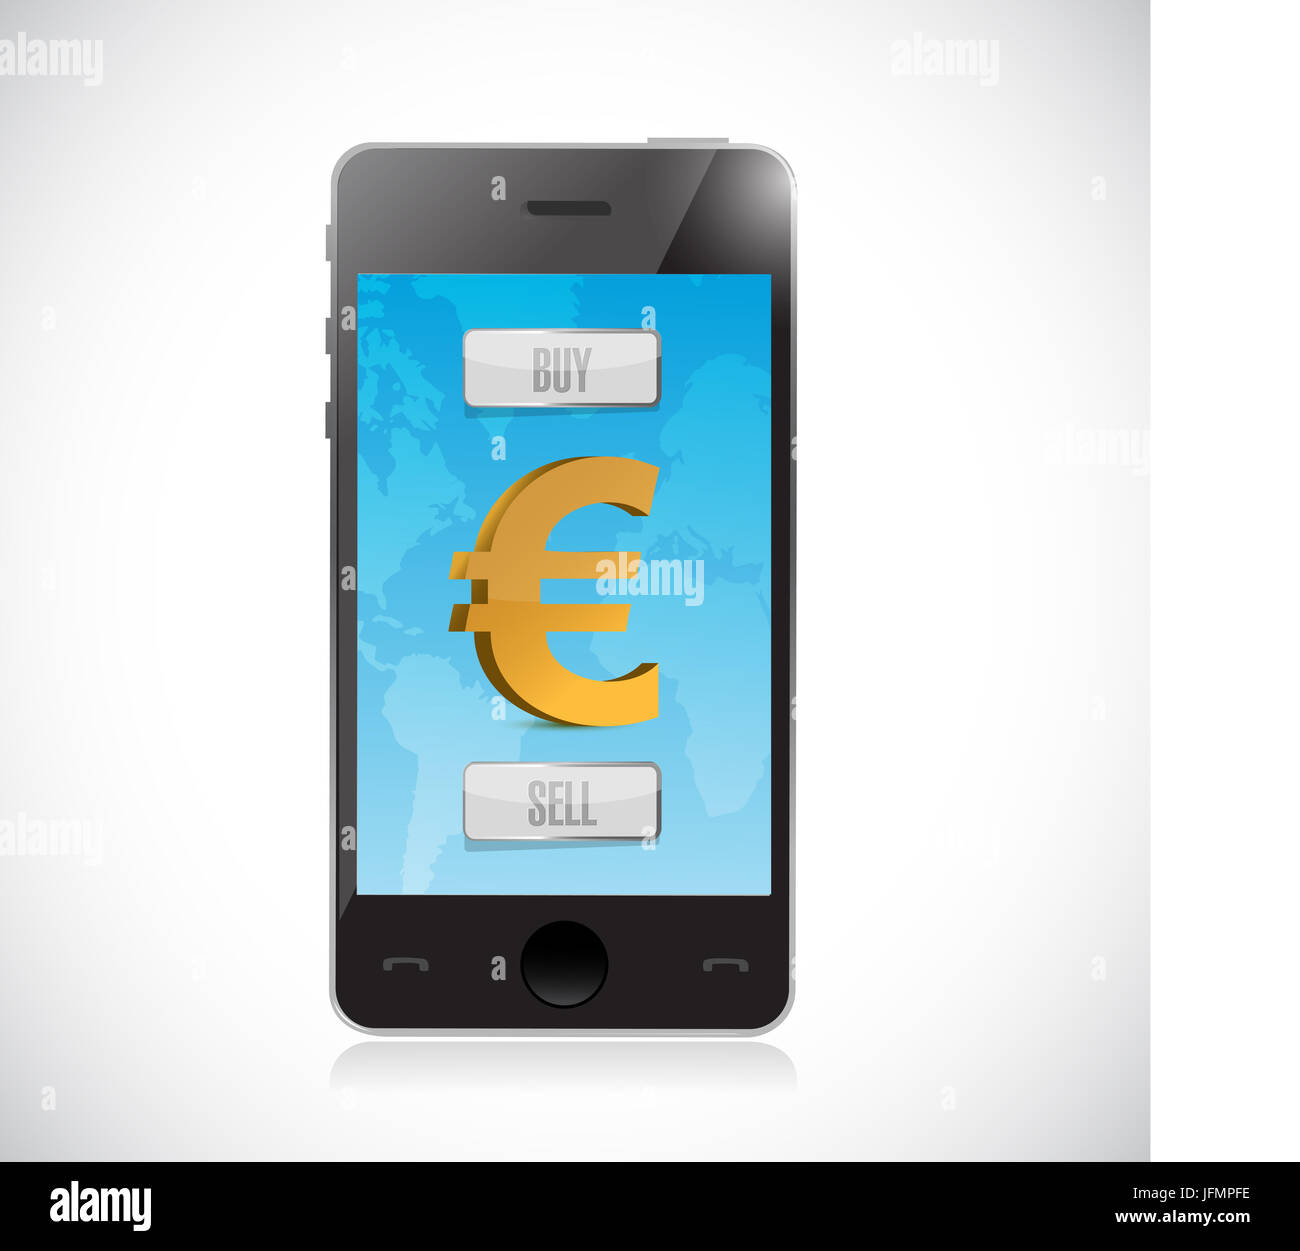 kaufen Sie oder verkaufen Sie Euro-Währung mit Smartphone. Forex Markt Illustration design Stockfoto